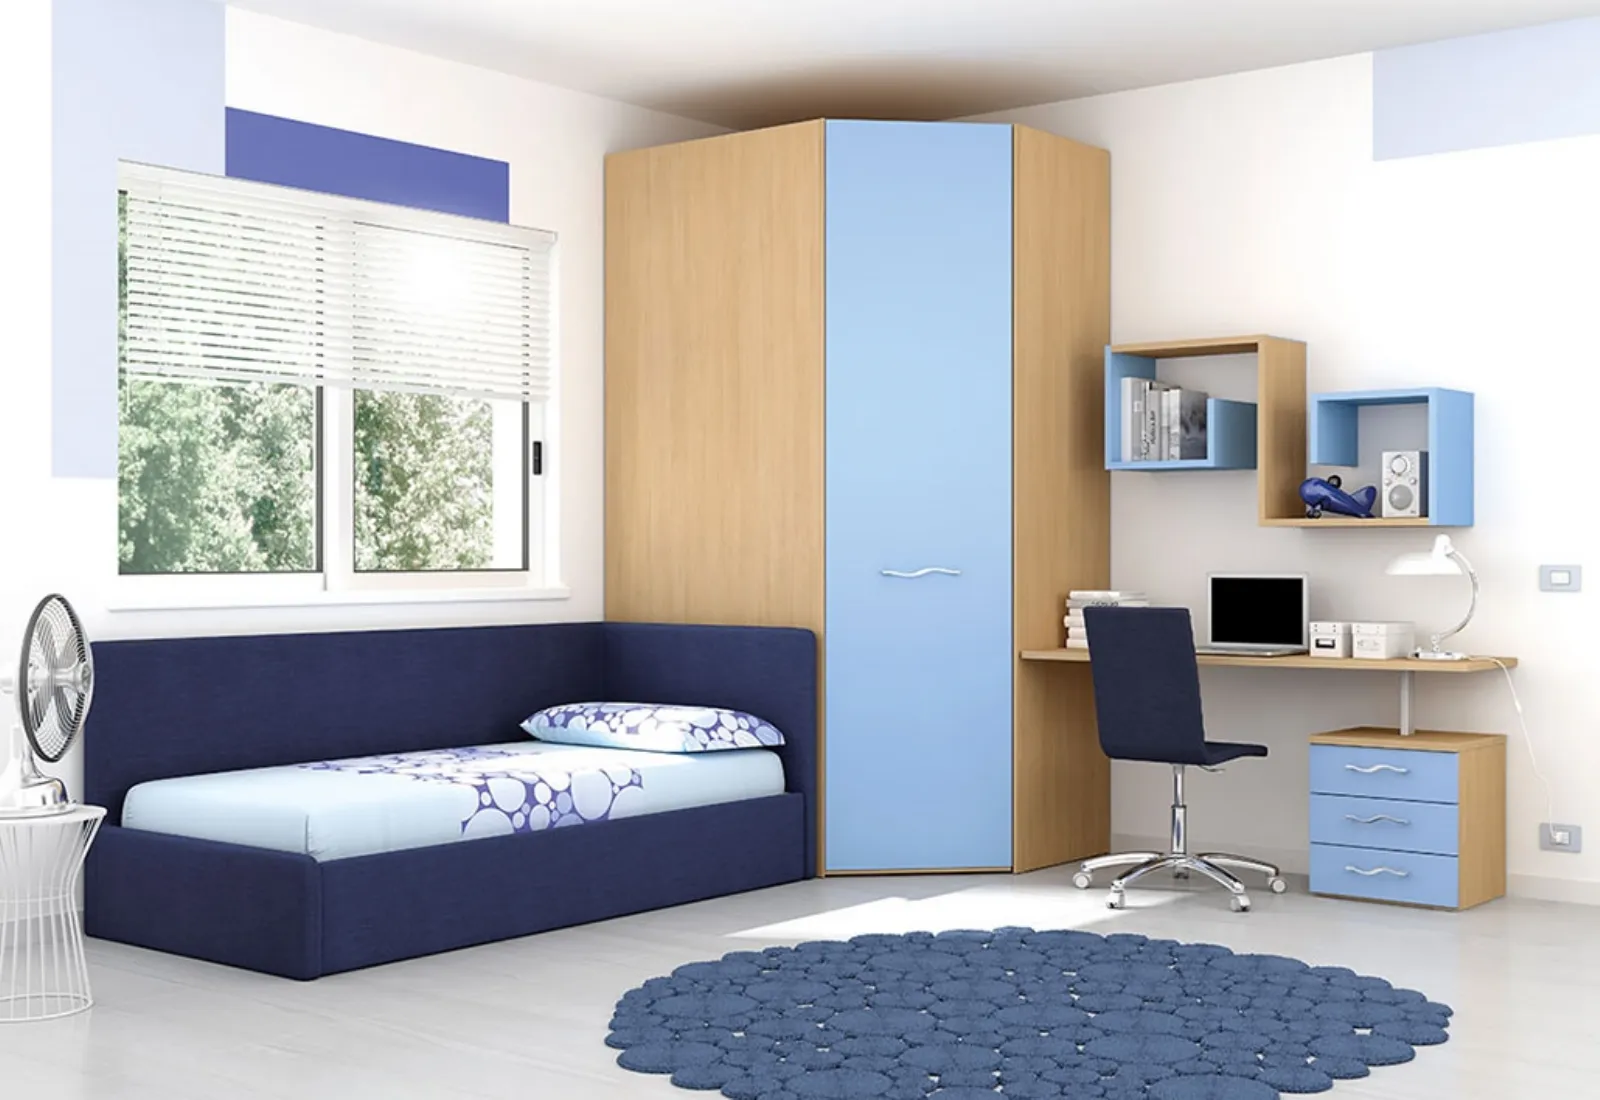 camere da letto per ragazzi moderne camerette